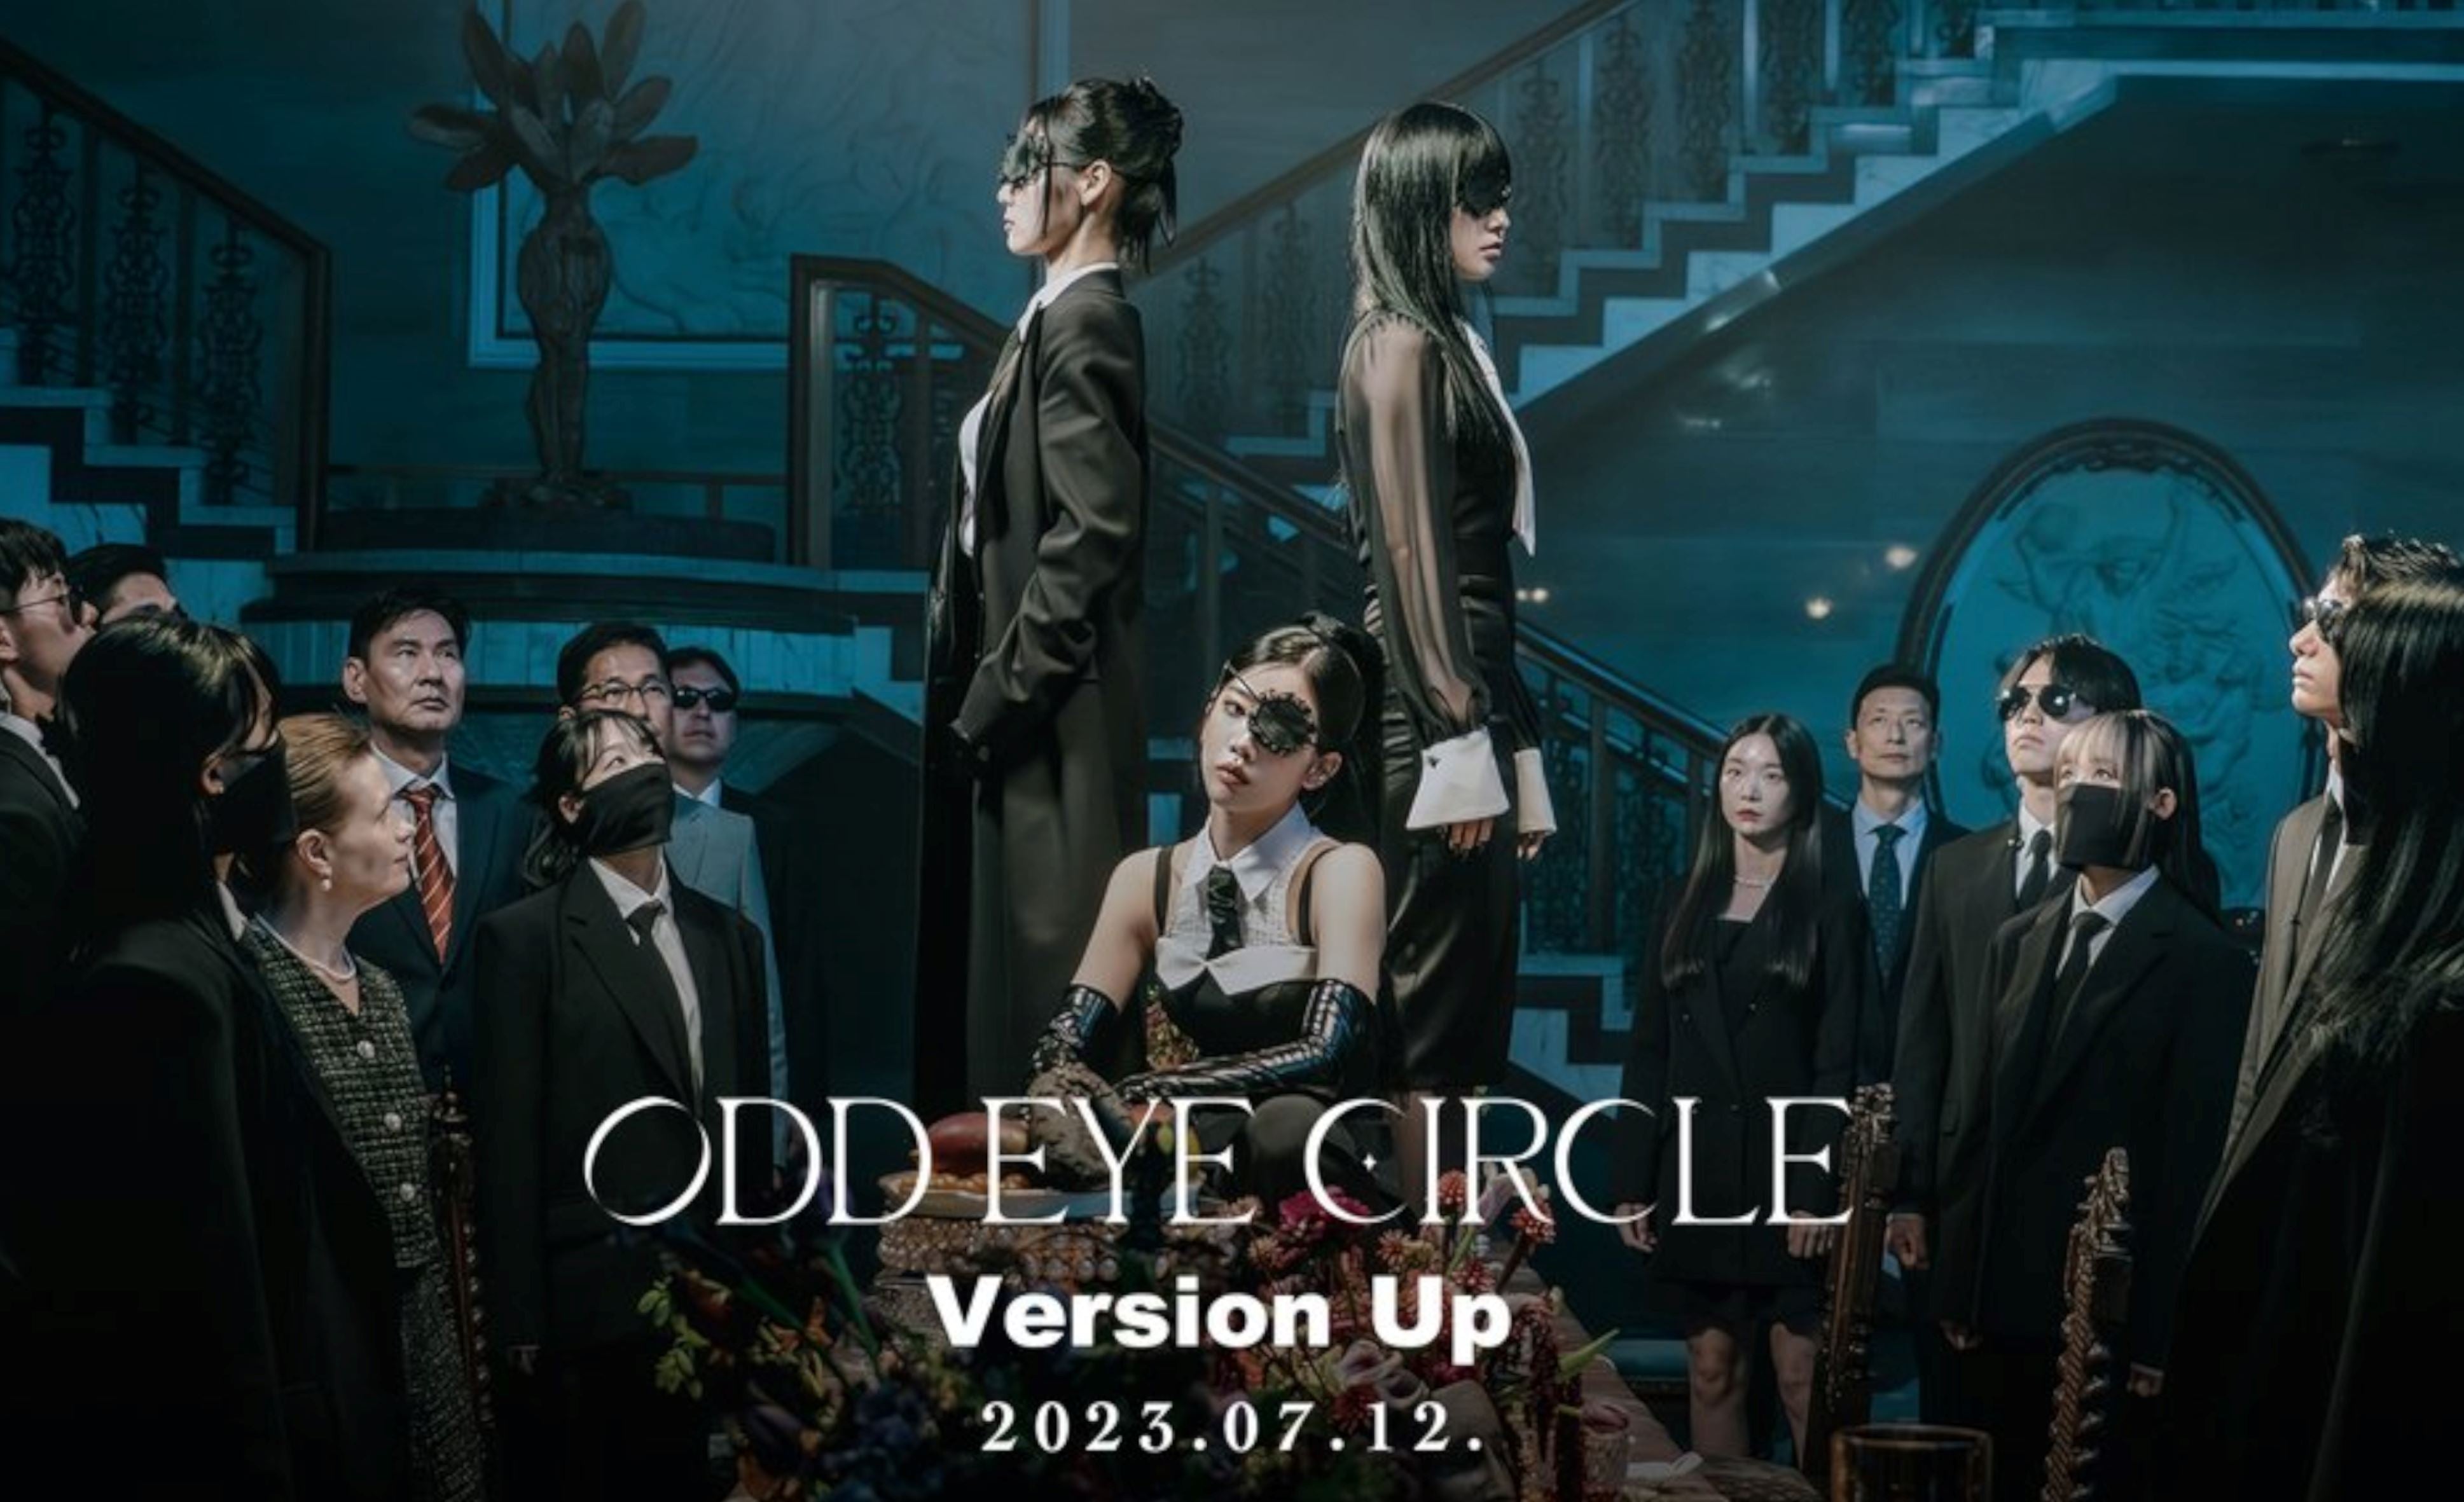 ODD EYE CIRCLE präsentiert Details zu neuem Album und Europa Tour! 